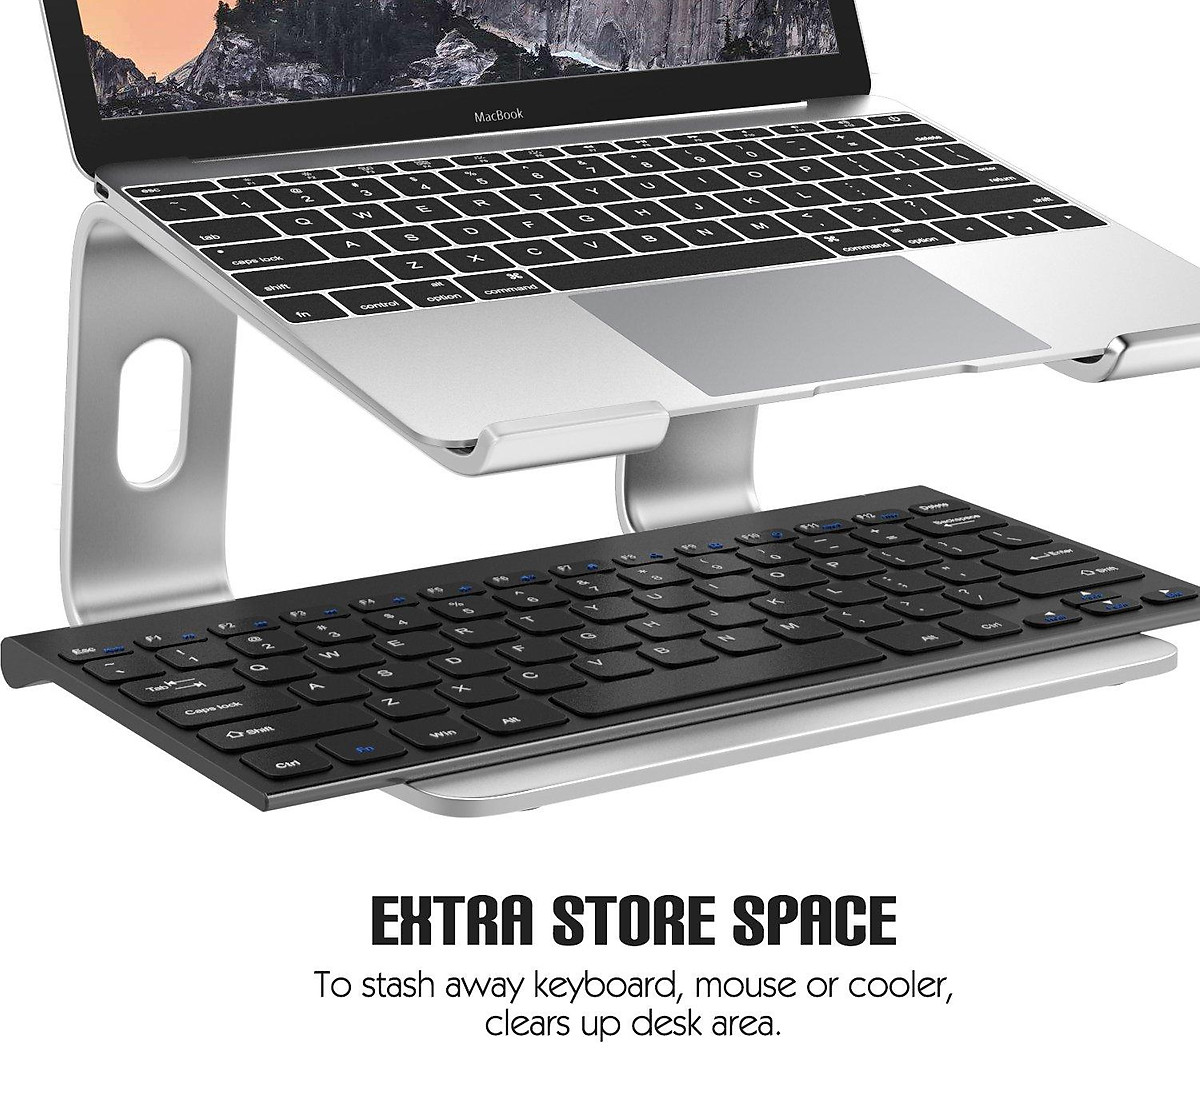 Giá Đỡ Laptop Macbook Nhôm Tháo Lắp Gọn Nhẹ